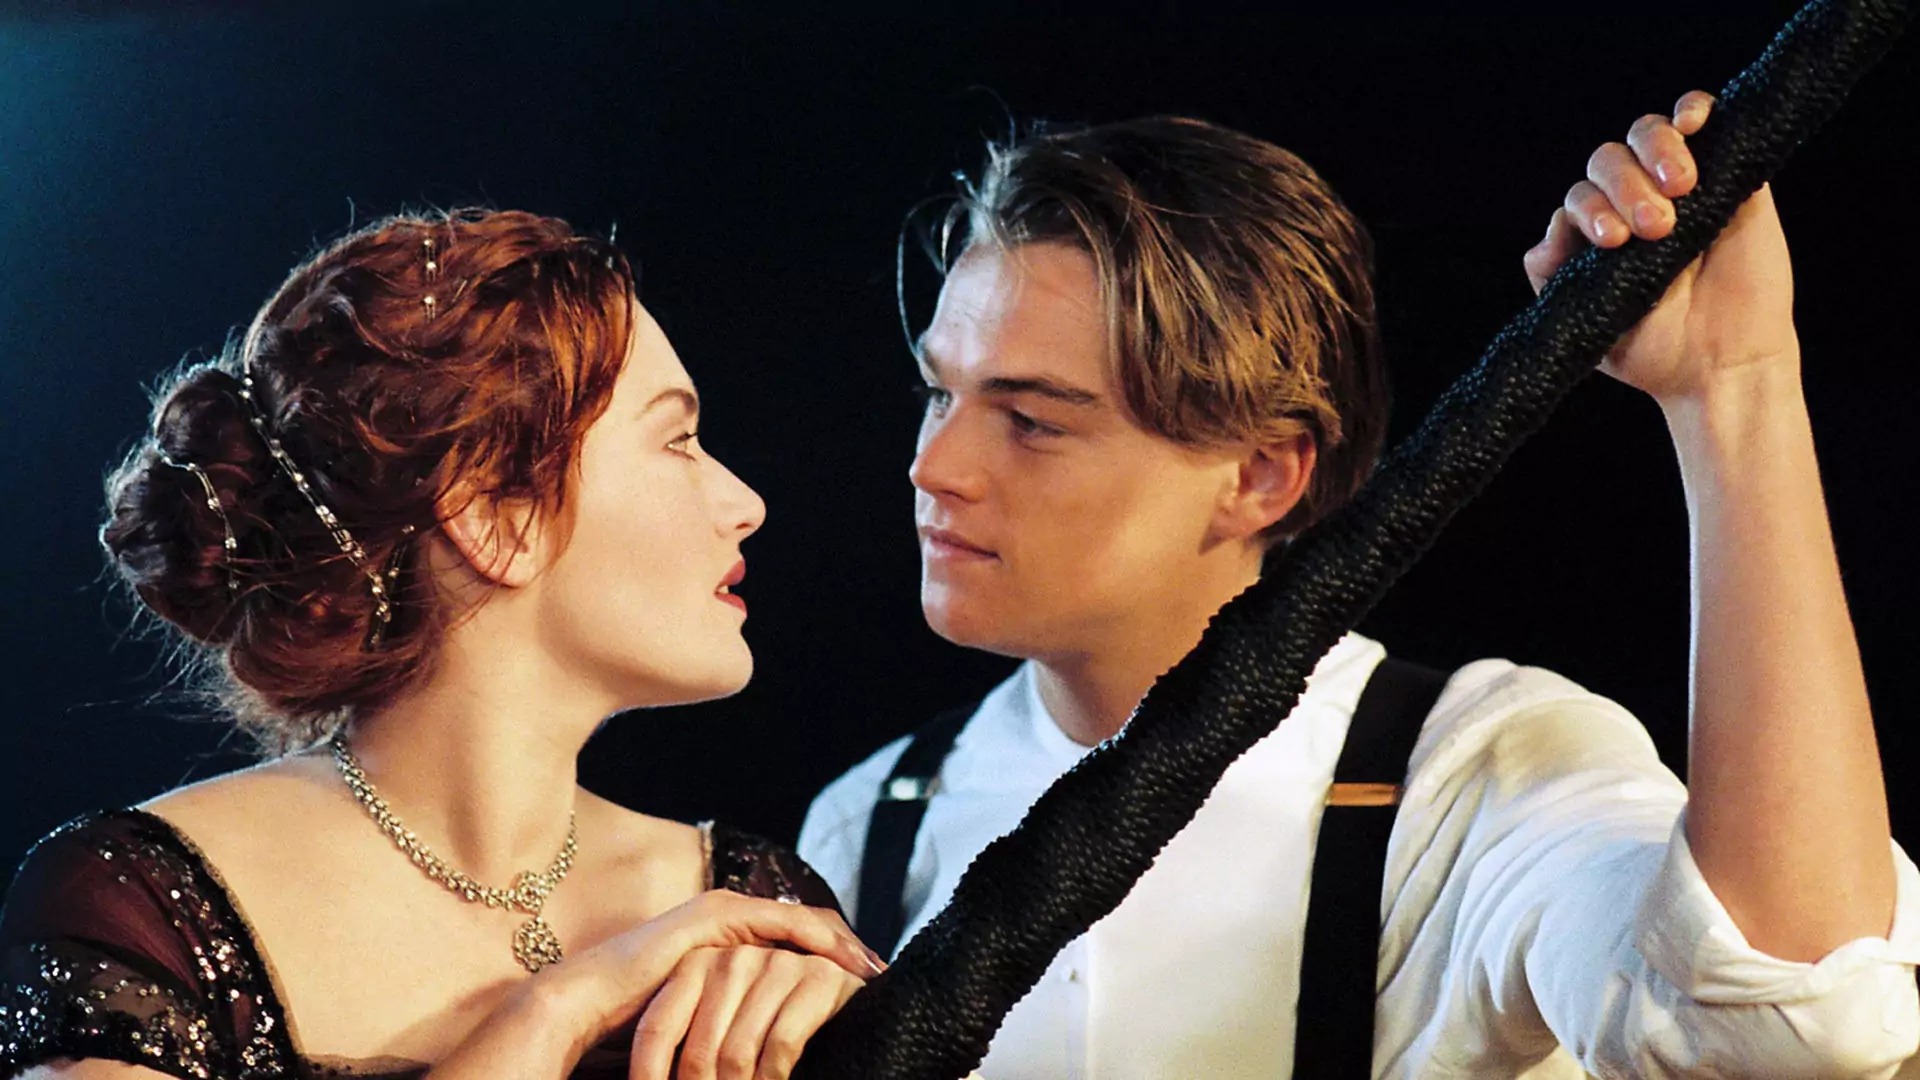 Zakończenie Titanica mogło wyglądać nieco inaczej - usunięta scena jest pełna emocji [wideo]